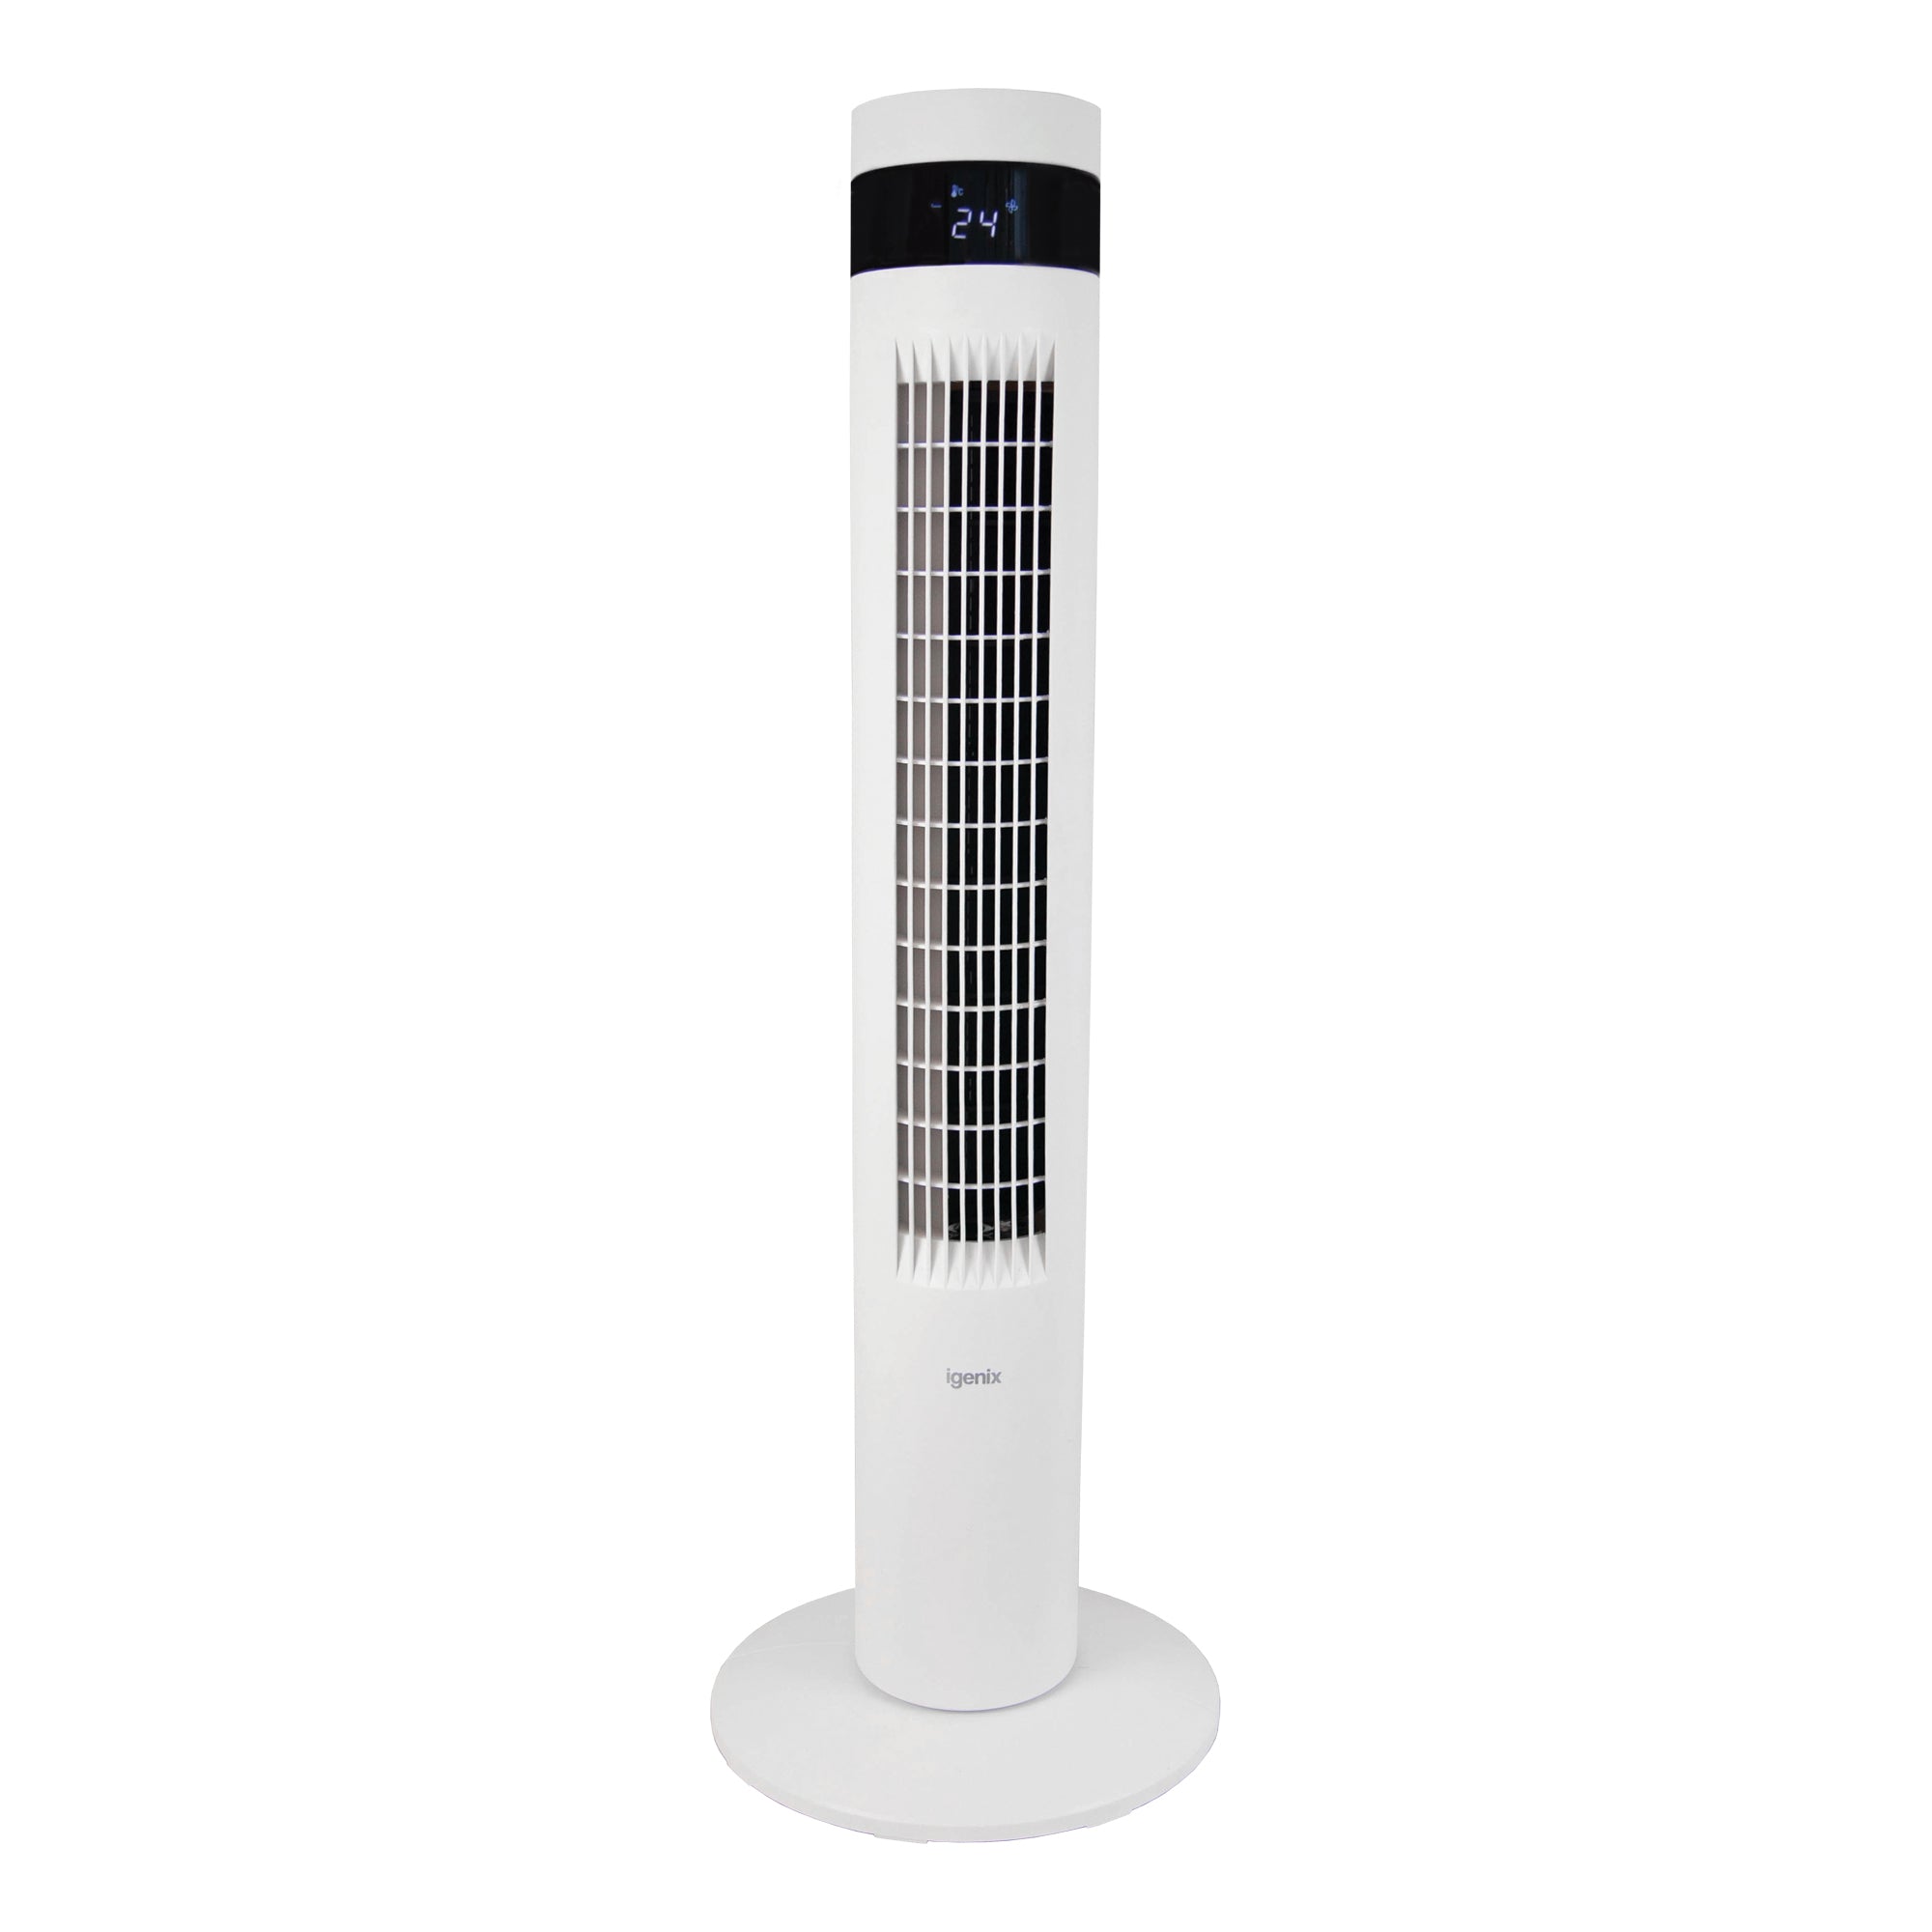 35 Inch Digital Tower Fan, 3 Speed Settings, White